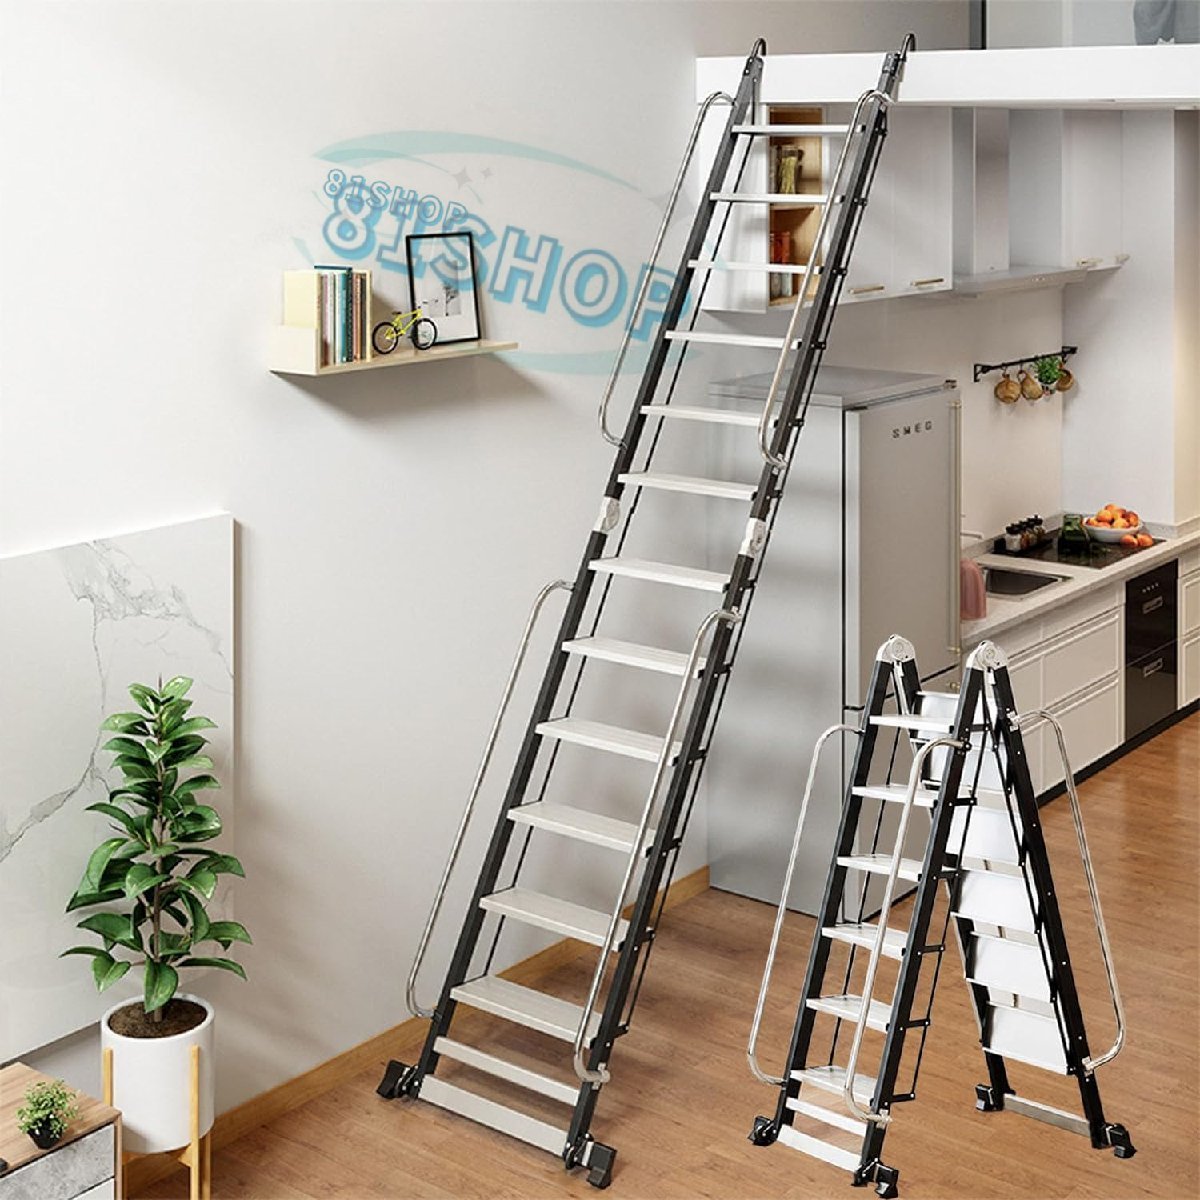 [81SHOP] крыша обратная сторона лестница aluminium сплав loft лестница лестница поручень имеется для бытового использования складной лестница легкий многофункциональный безопасность фиксация крюк широкий. педаль 10 уровень 